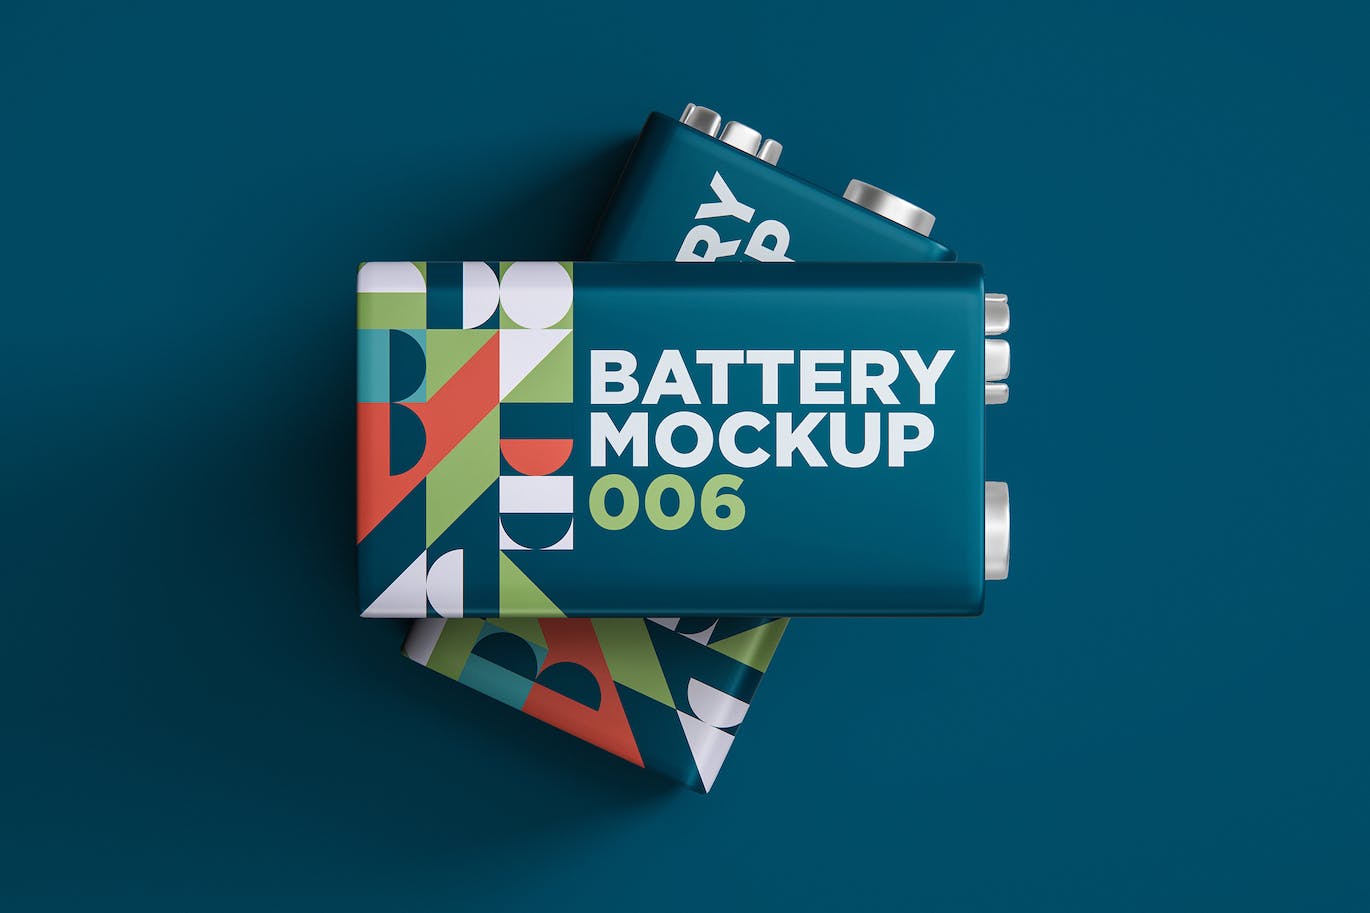 电池包装设计样机v6 Battery Mockup 006 样机素材 第1张